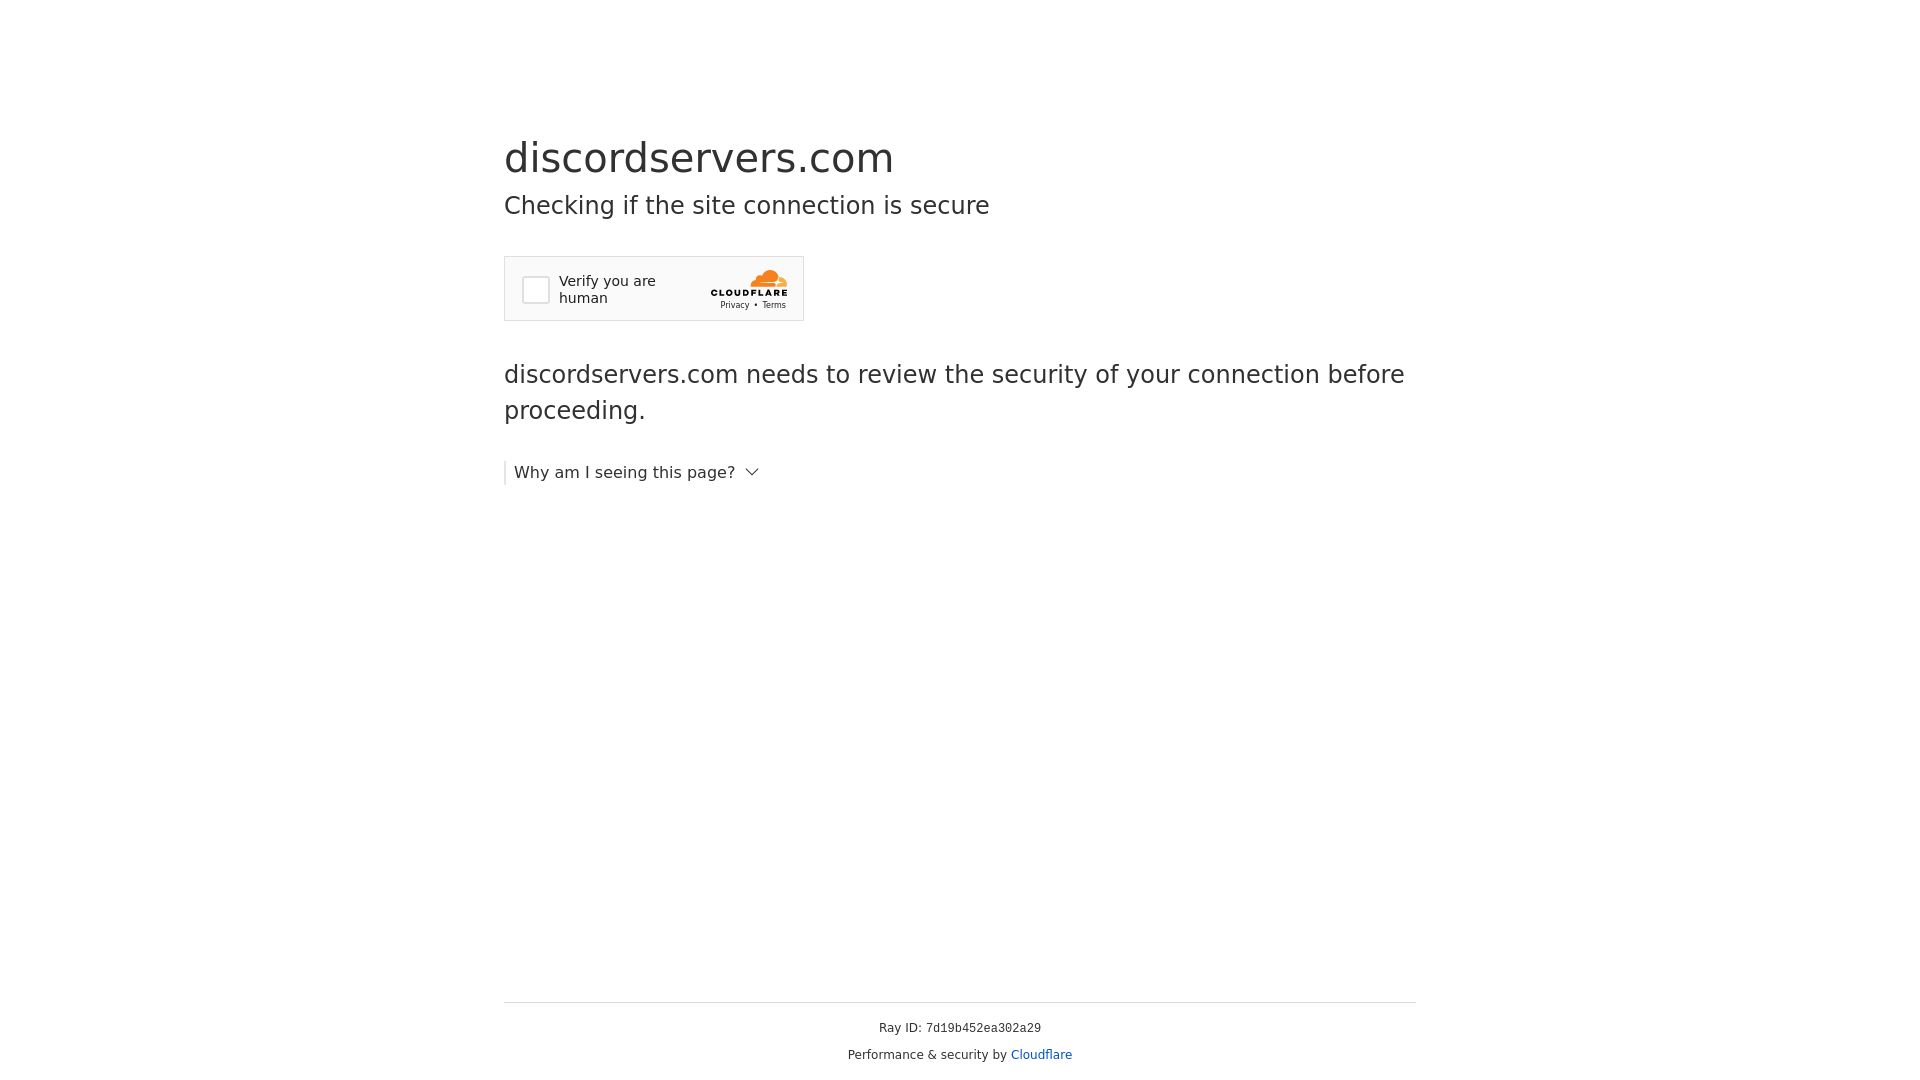 Website status discordservers.com is   ONLINE